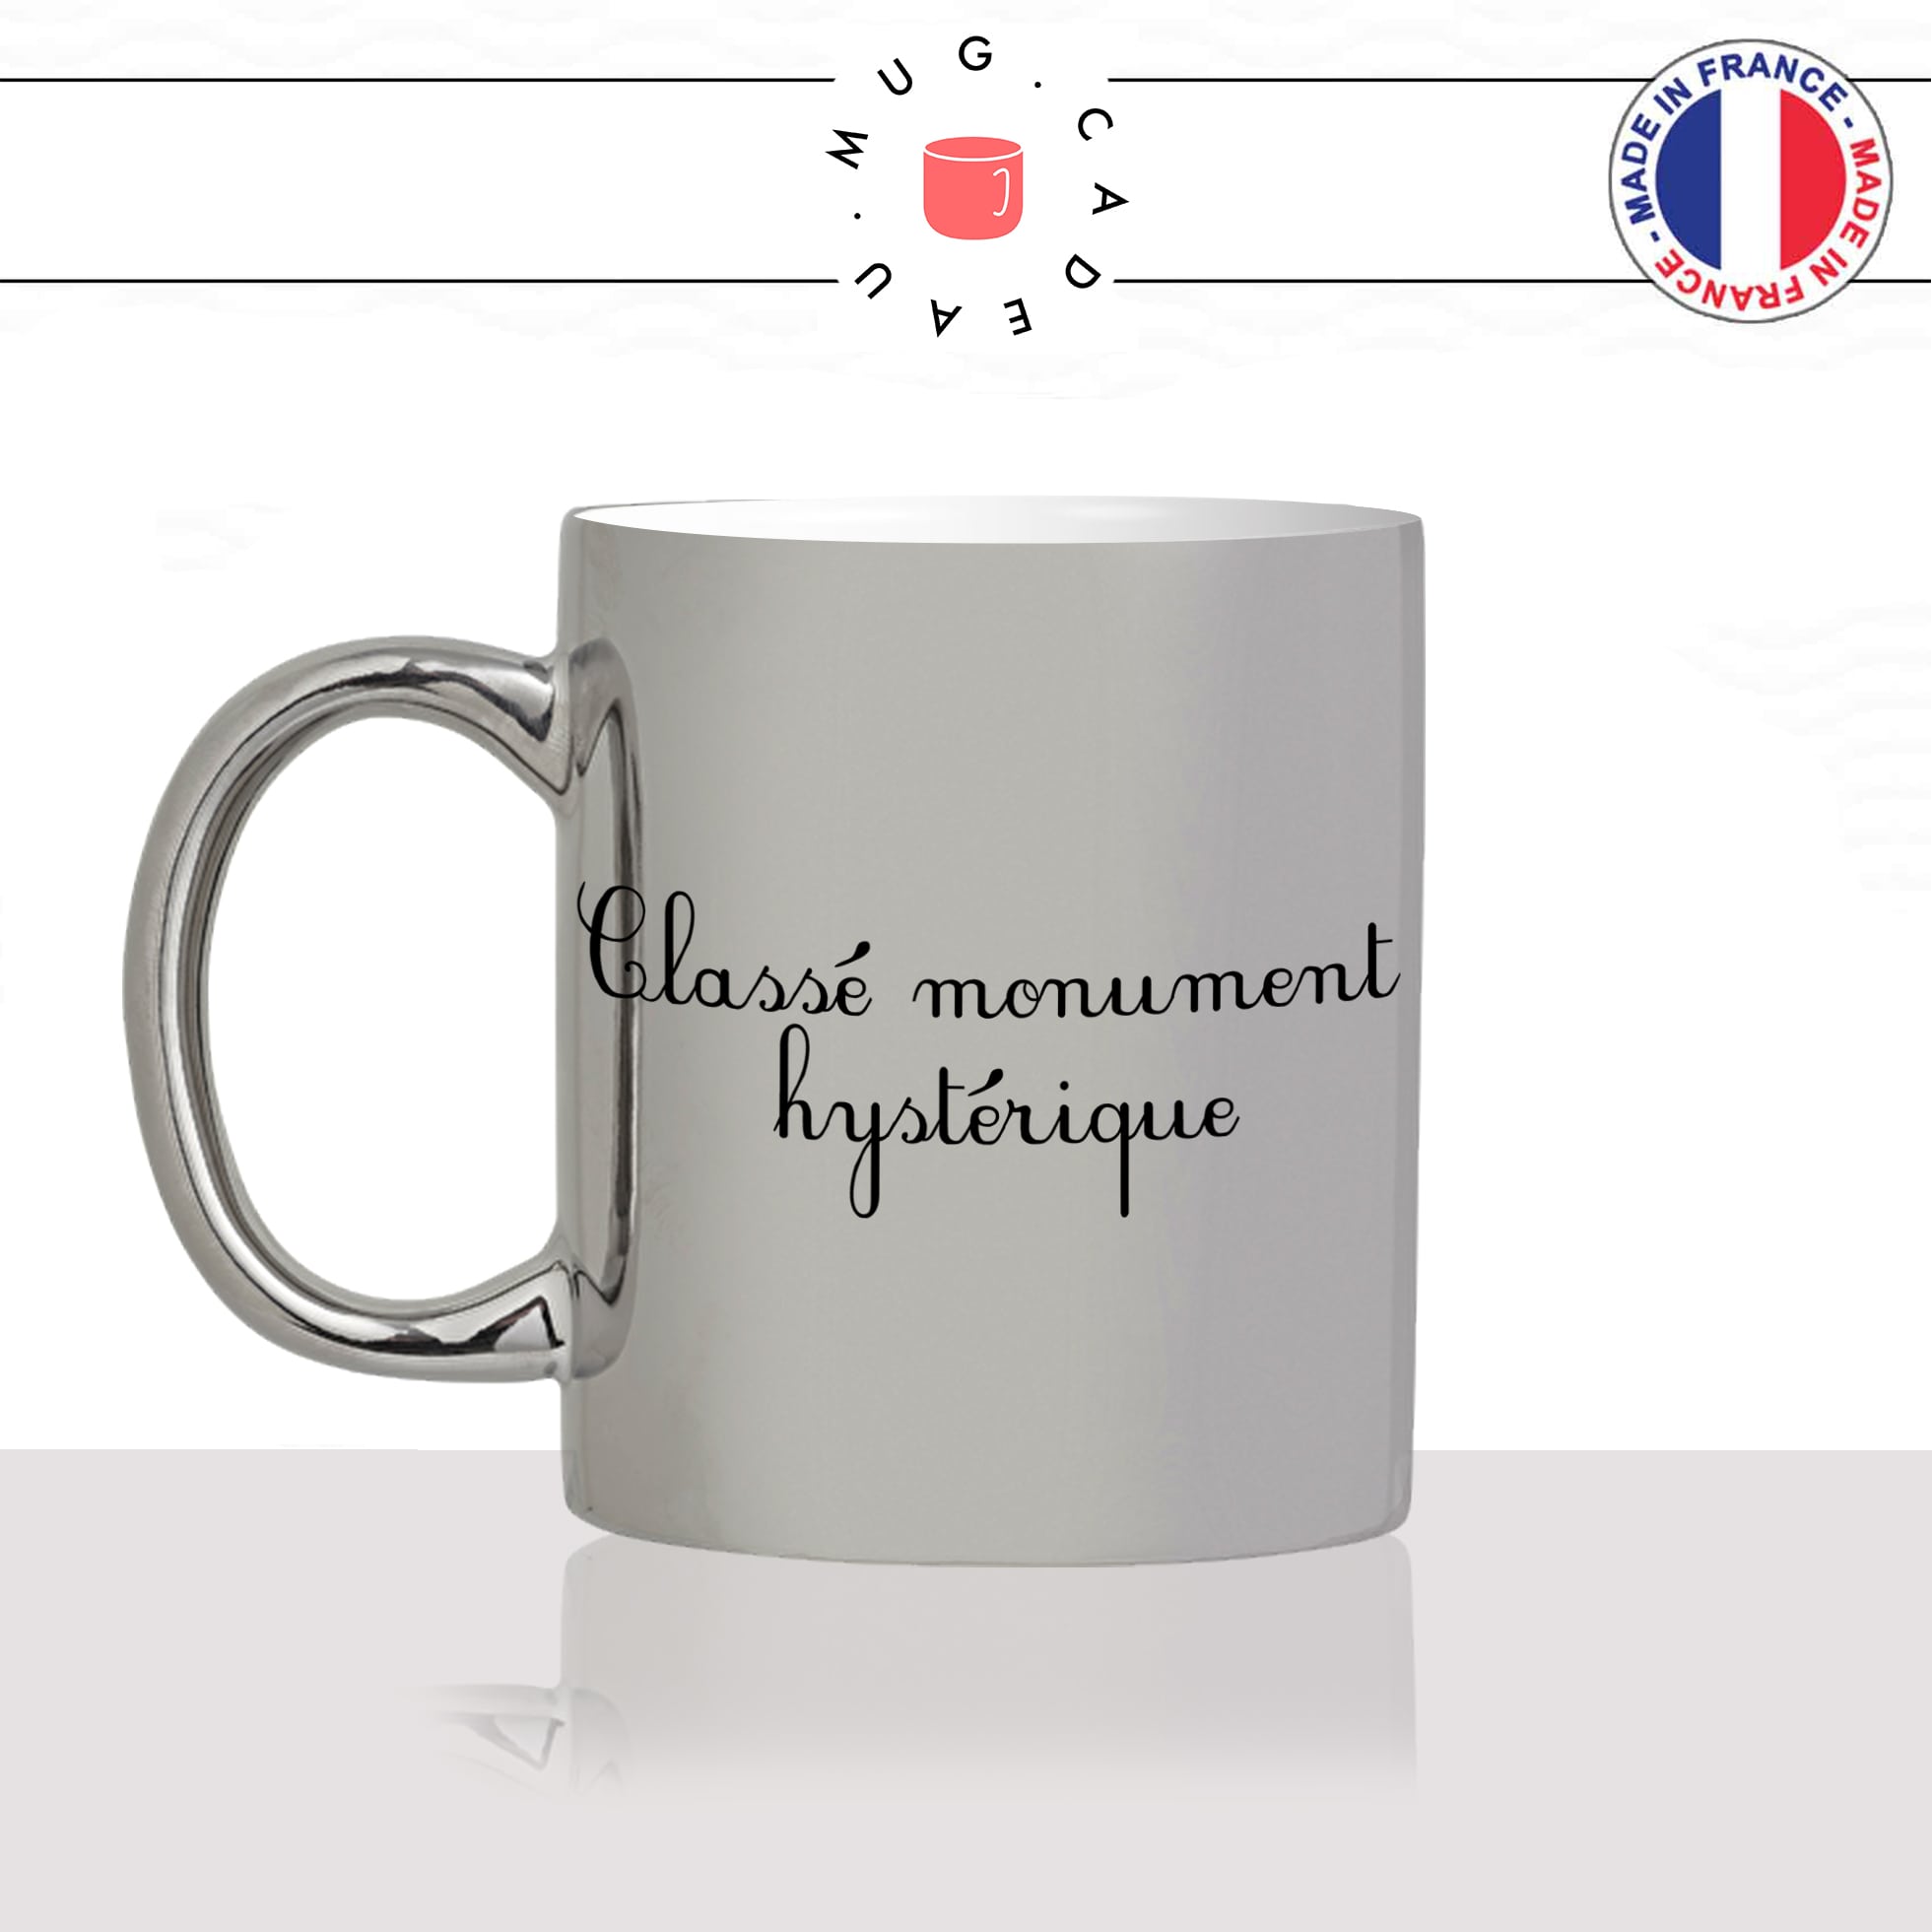 mug-tasse-argent-argenté-silver-classé-monument-hystérique-feministe-femme-copine-collegue-couple-humour-idée-cadeau-fun-cool-café-thé-min